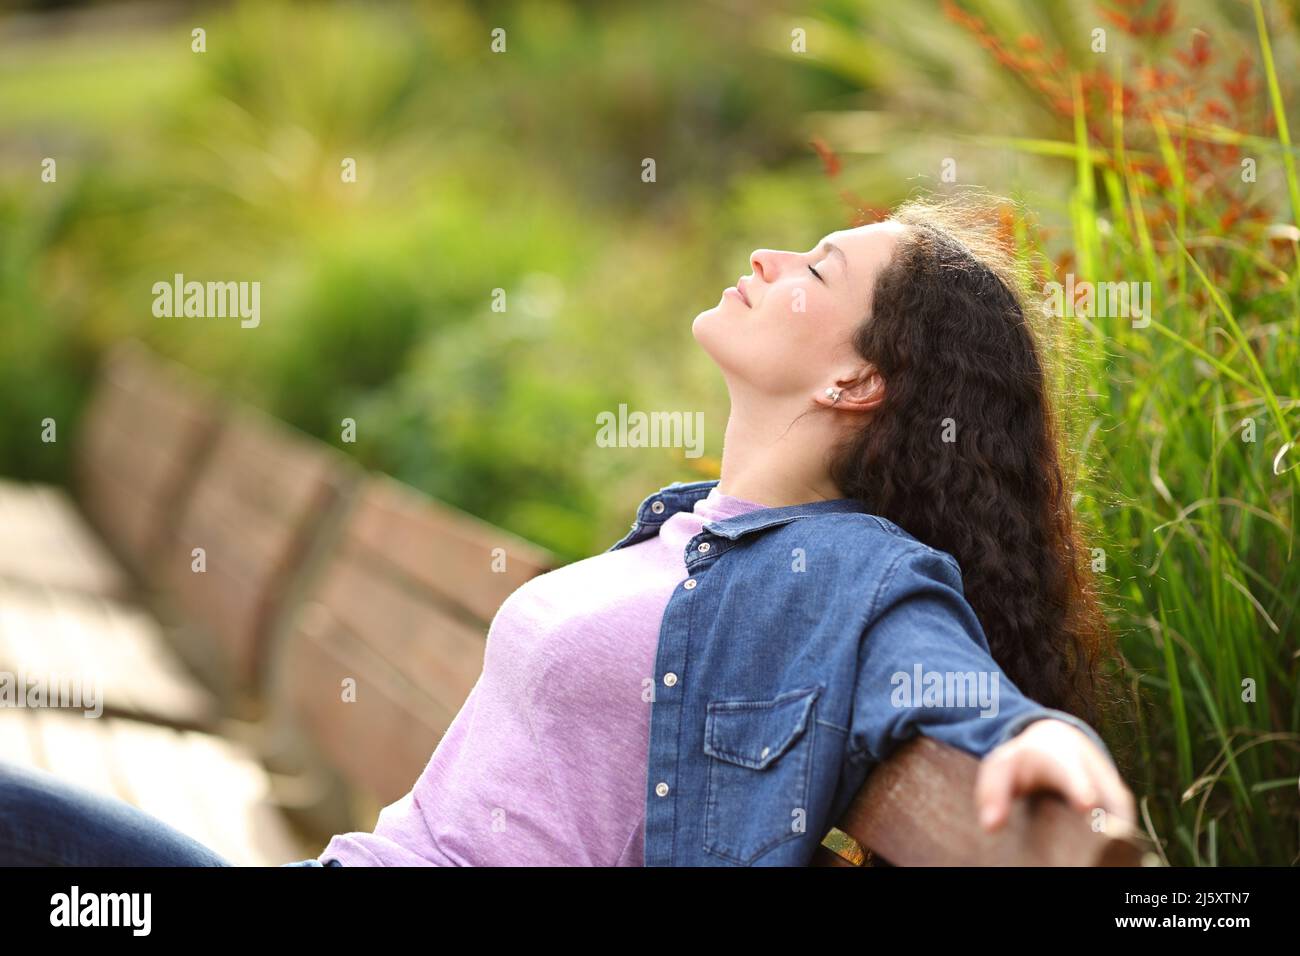 Profil d'une femme qui respire de l'air frais assis sur un banc dans un parc Banque D'Images